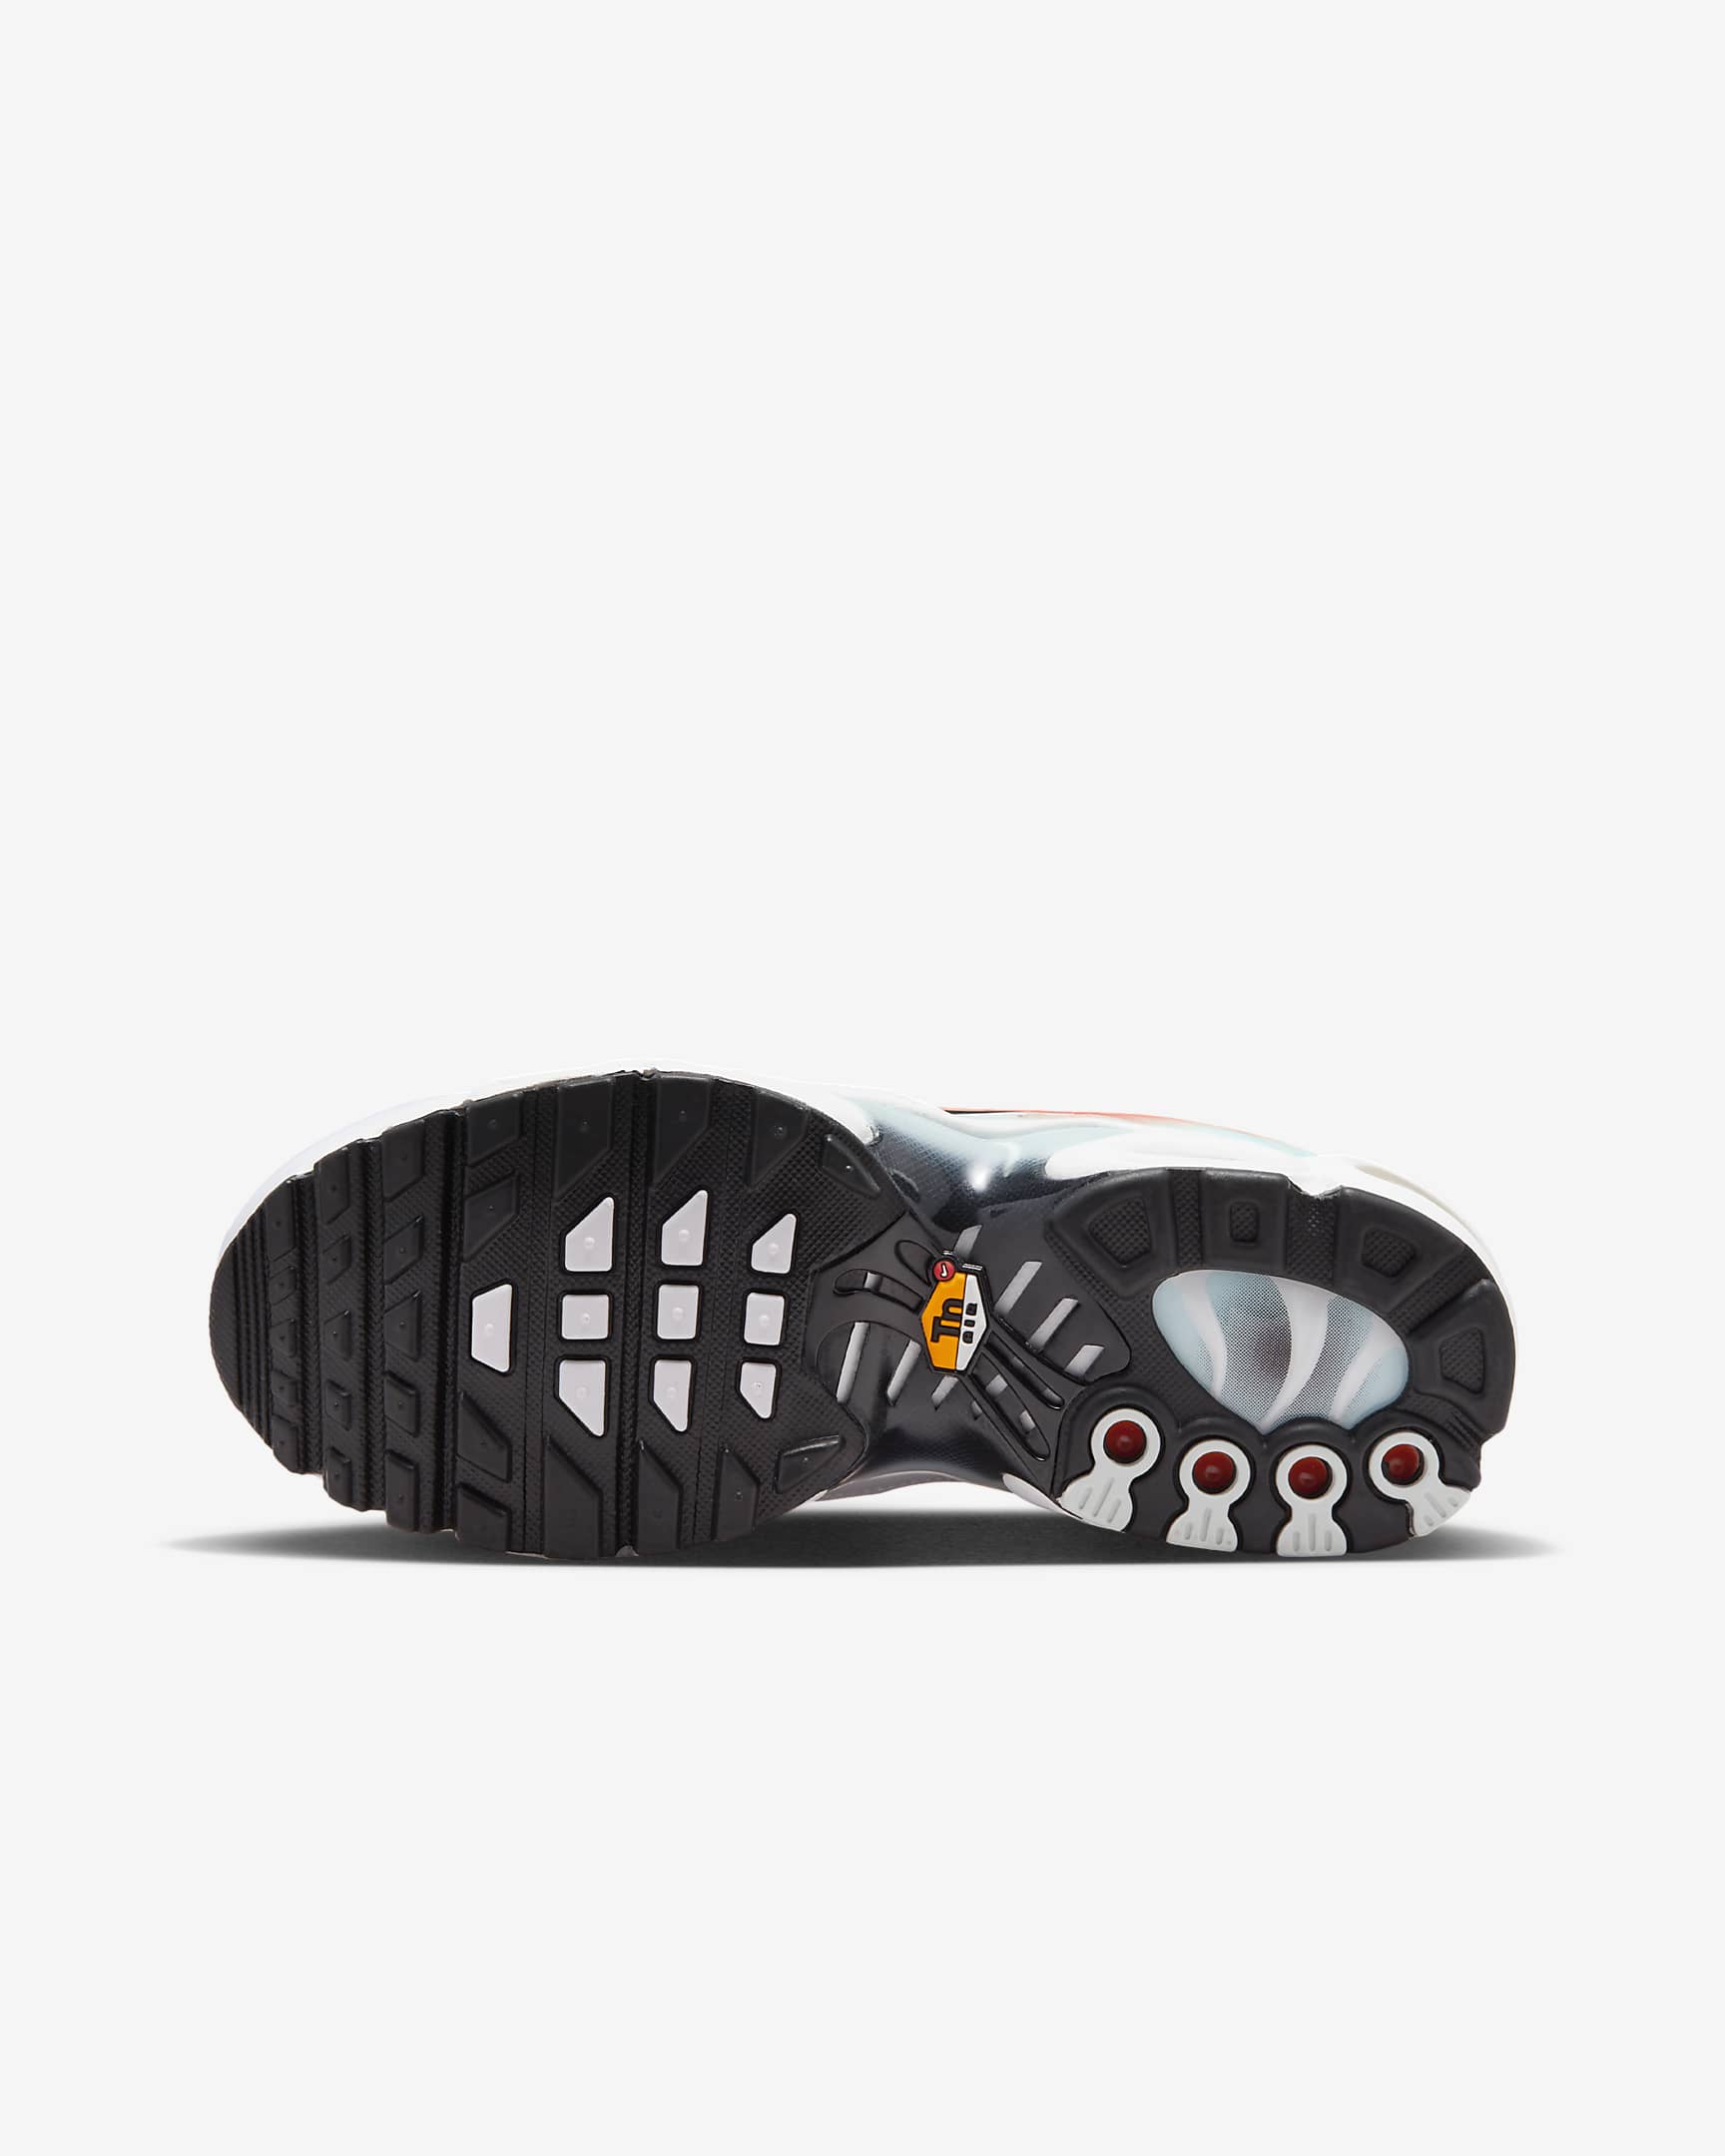 Buty dla dużych dzieci Nike Air Max Plus - Biel/Cosmic Clay/Lightning/Czerń